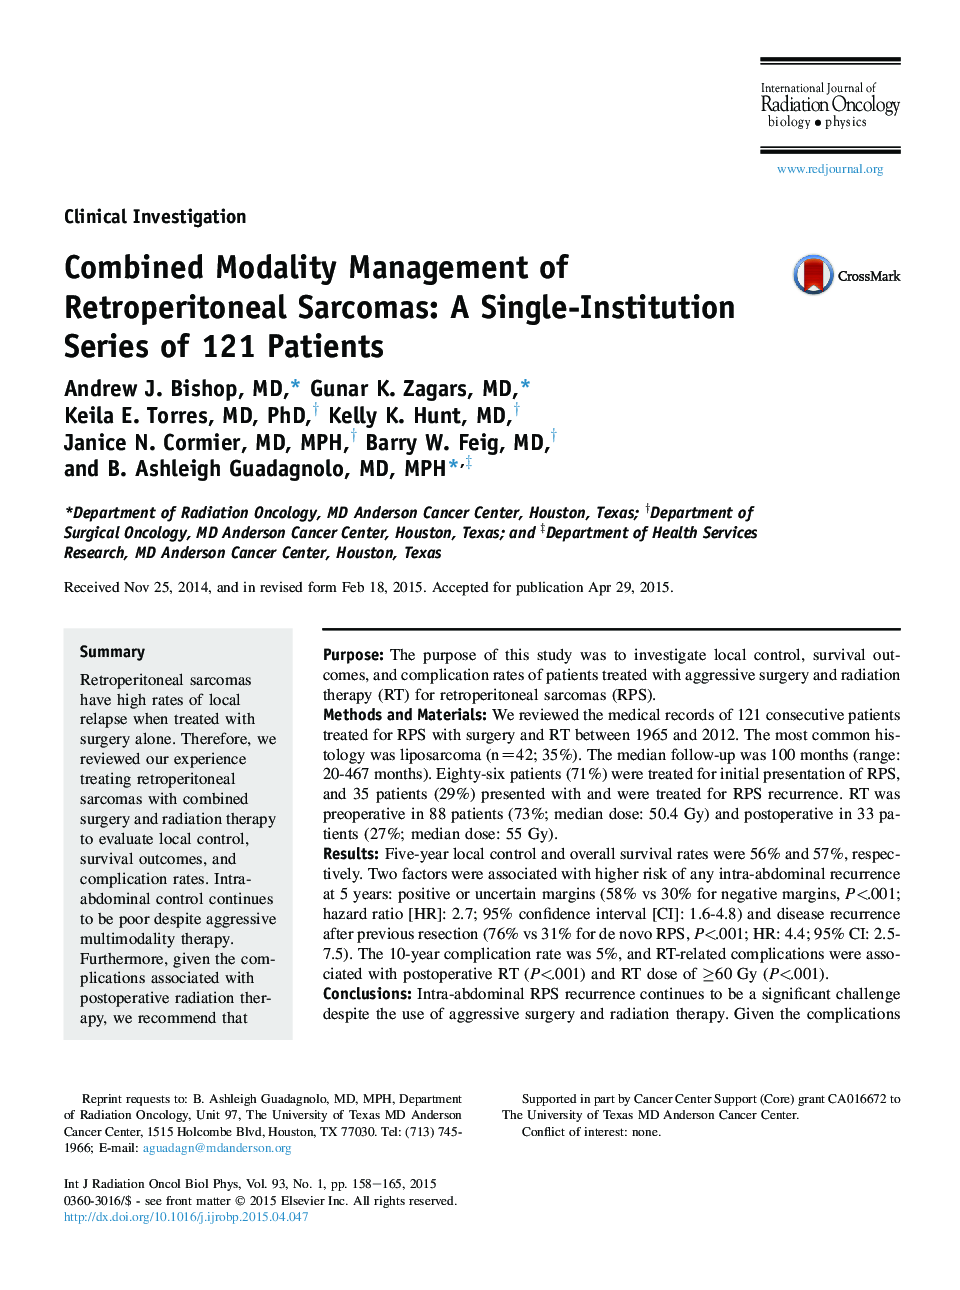 مدیریت ترکیبی مداخله ای از سارکوم های مجرای صفراوی: یک سری از موسسات تک 121 بیمار 